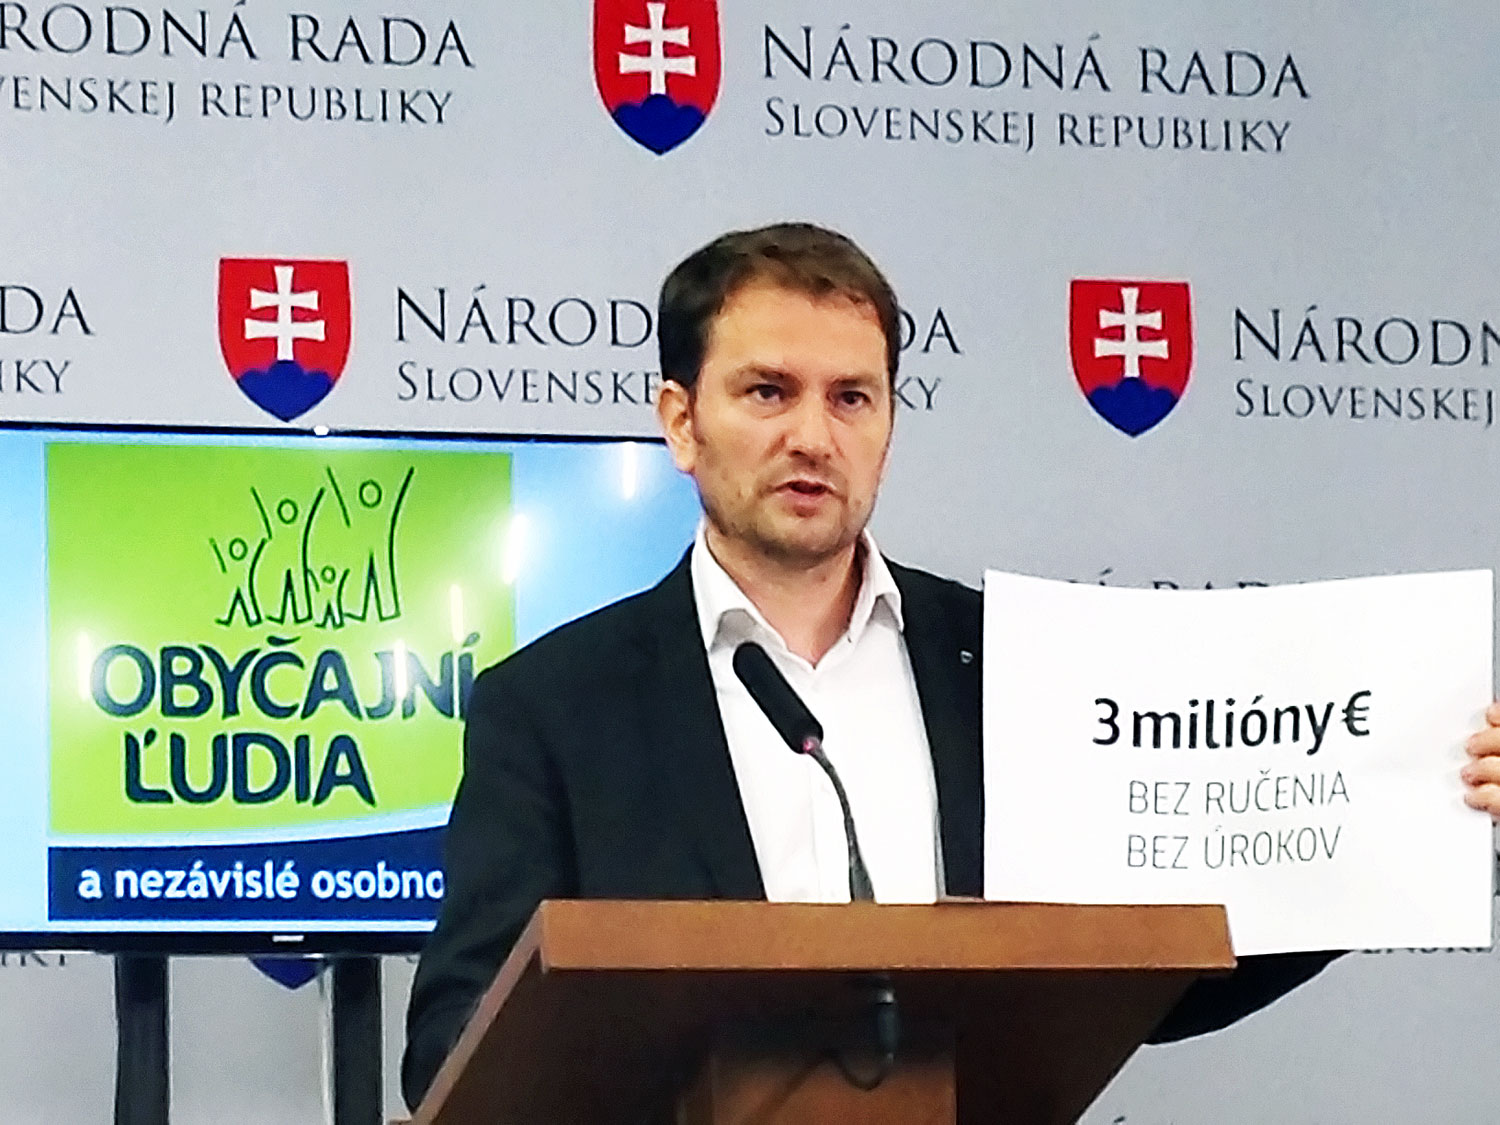 Igor Matovic az egyszerű emberek nevében a korrupció ellen ágál, miközben maga sem teljesen tiszta 